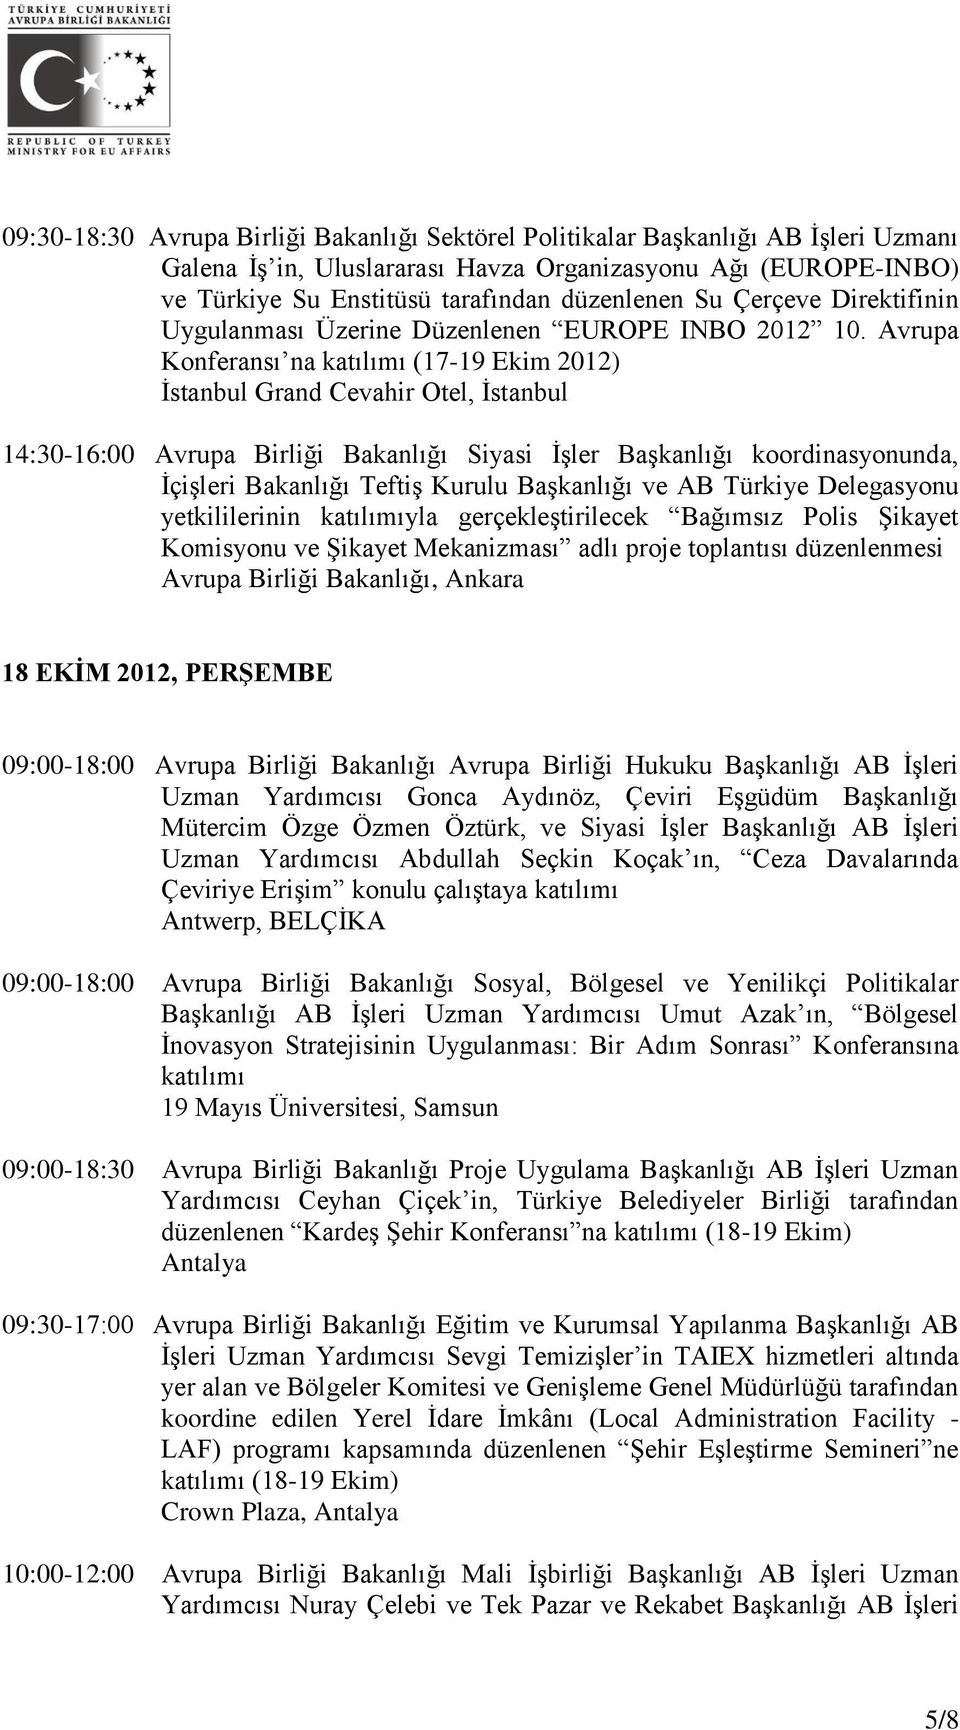 Avrupa Konferansı na katılımı (17-19 Ekim 2012) İstanbul Grand Cevahir Otel, İstanbul 14:30-16:00 Avrupa Birliği Bakanlığı Siyasi İşler Başkanlığı koordinasyonunda, İçişleri Bakanlığı Teftiş Kurulu